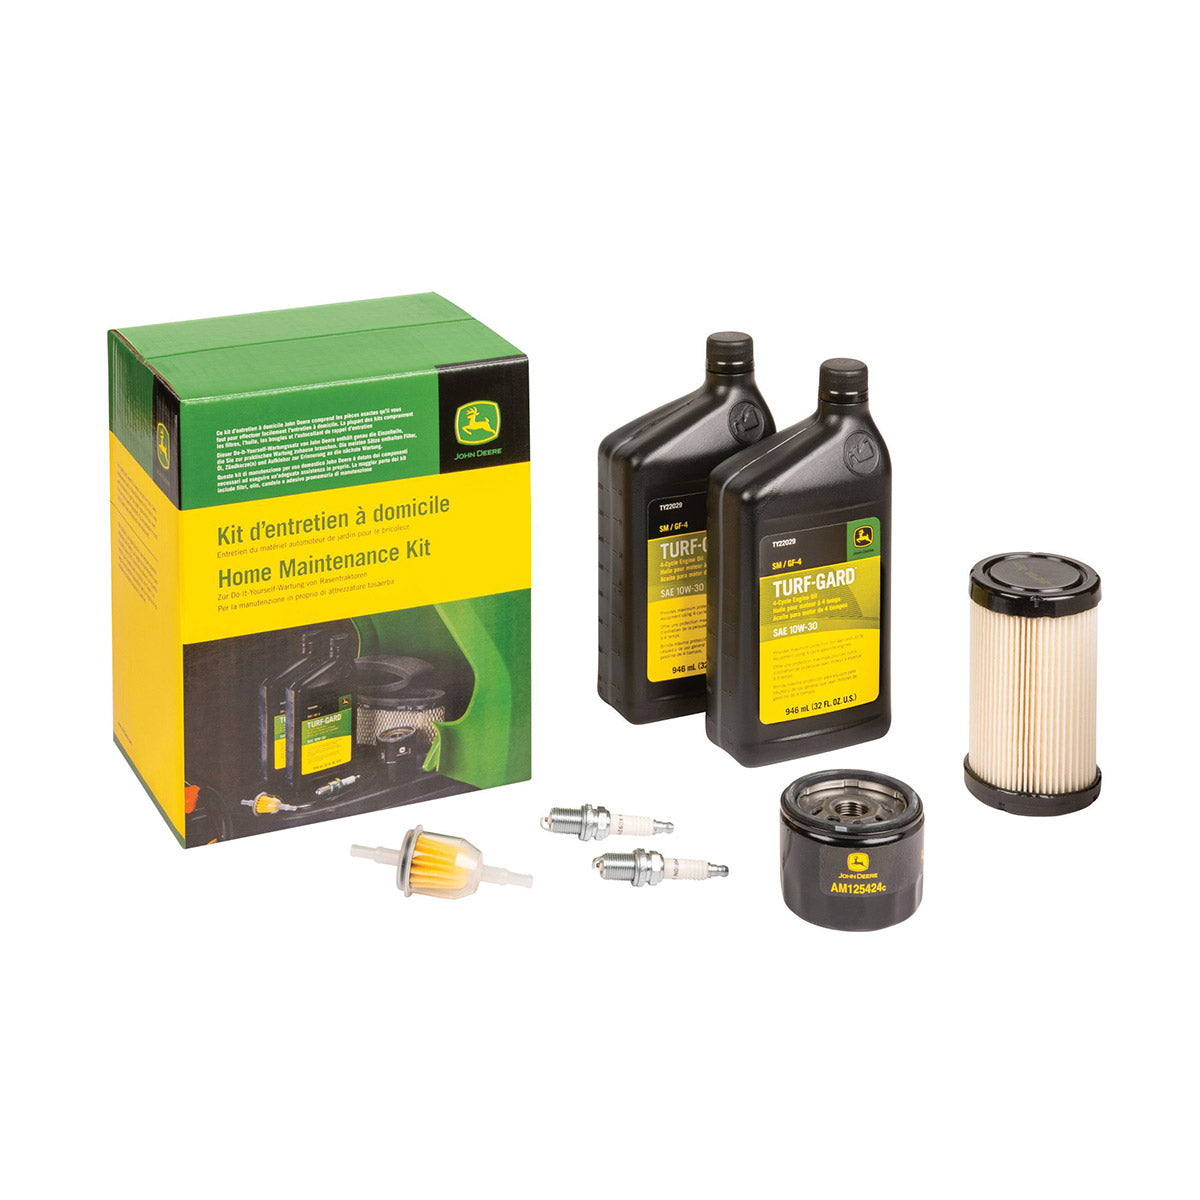 John Deere Home Maintenance Kit for S140, Z200 & Z300 Series - LG276